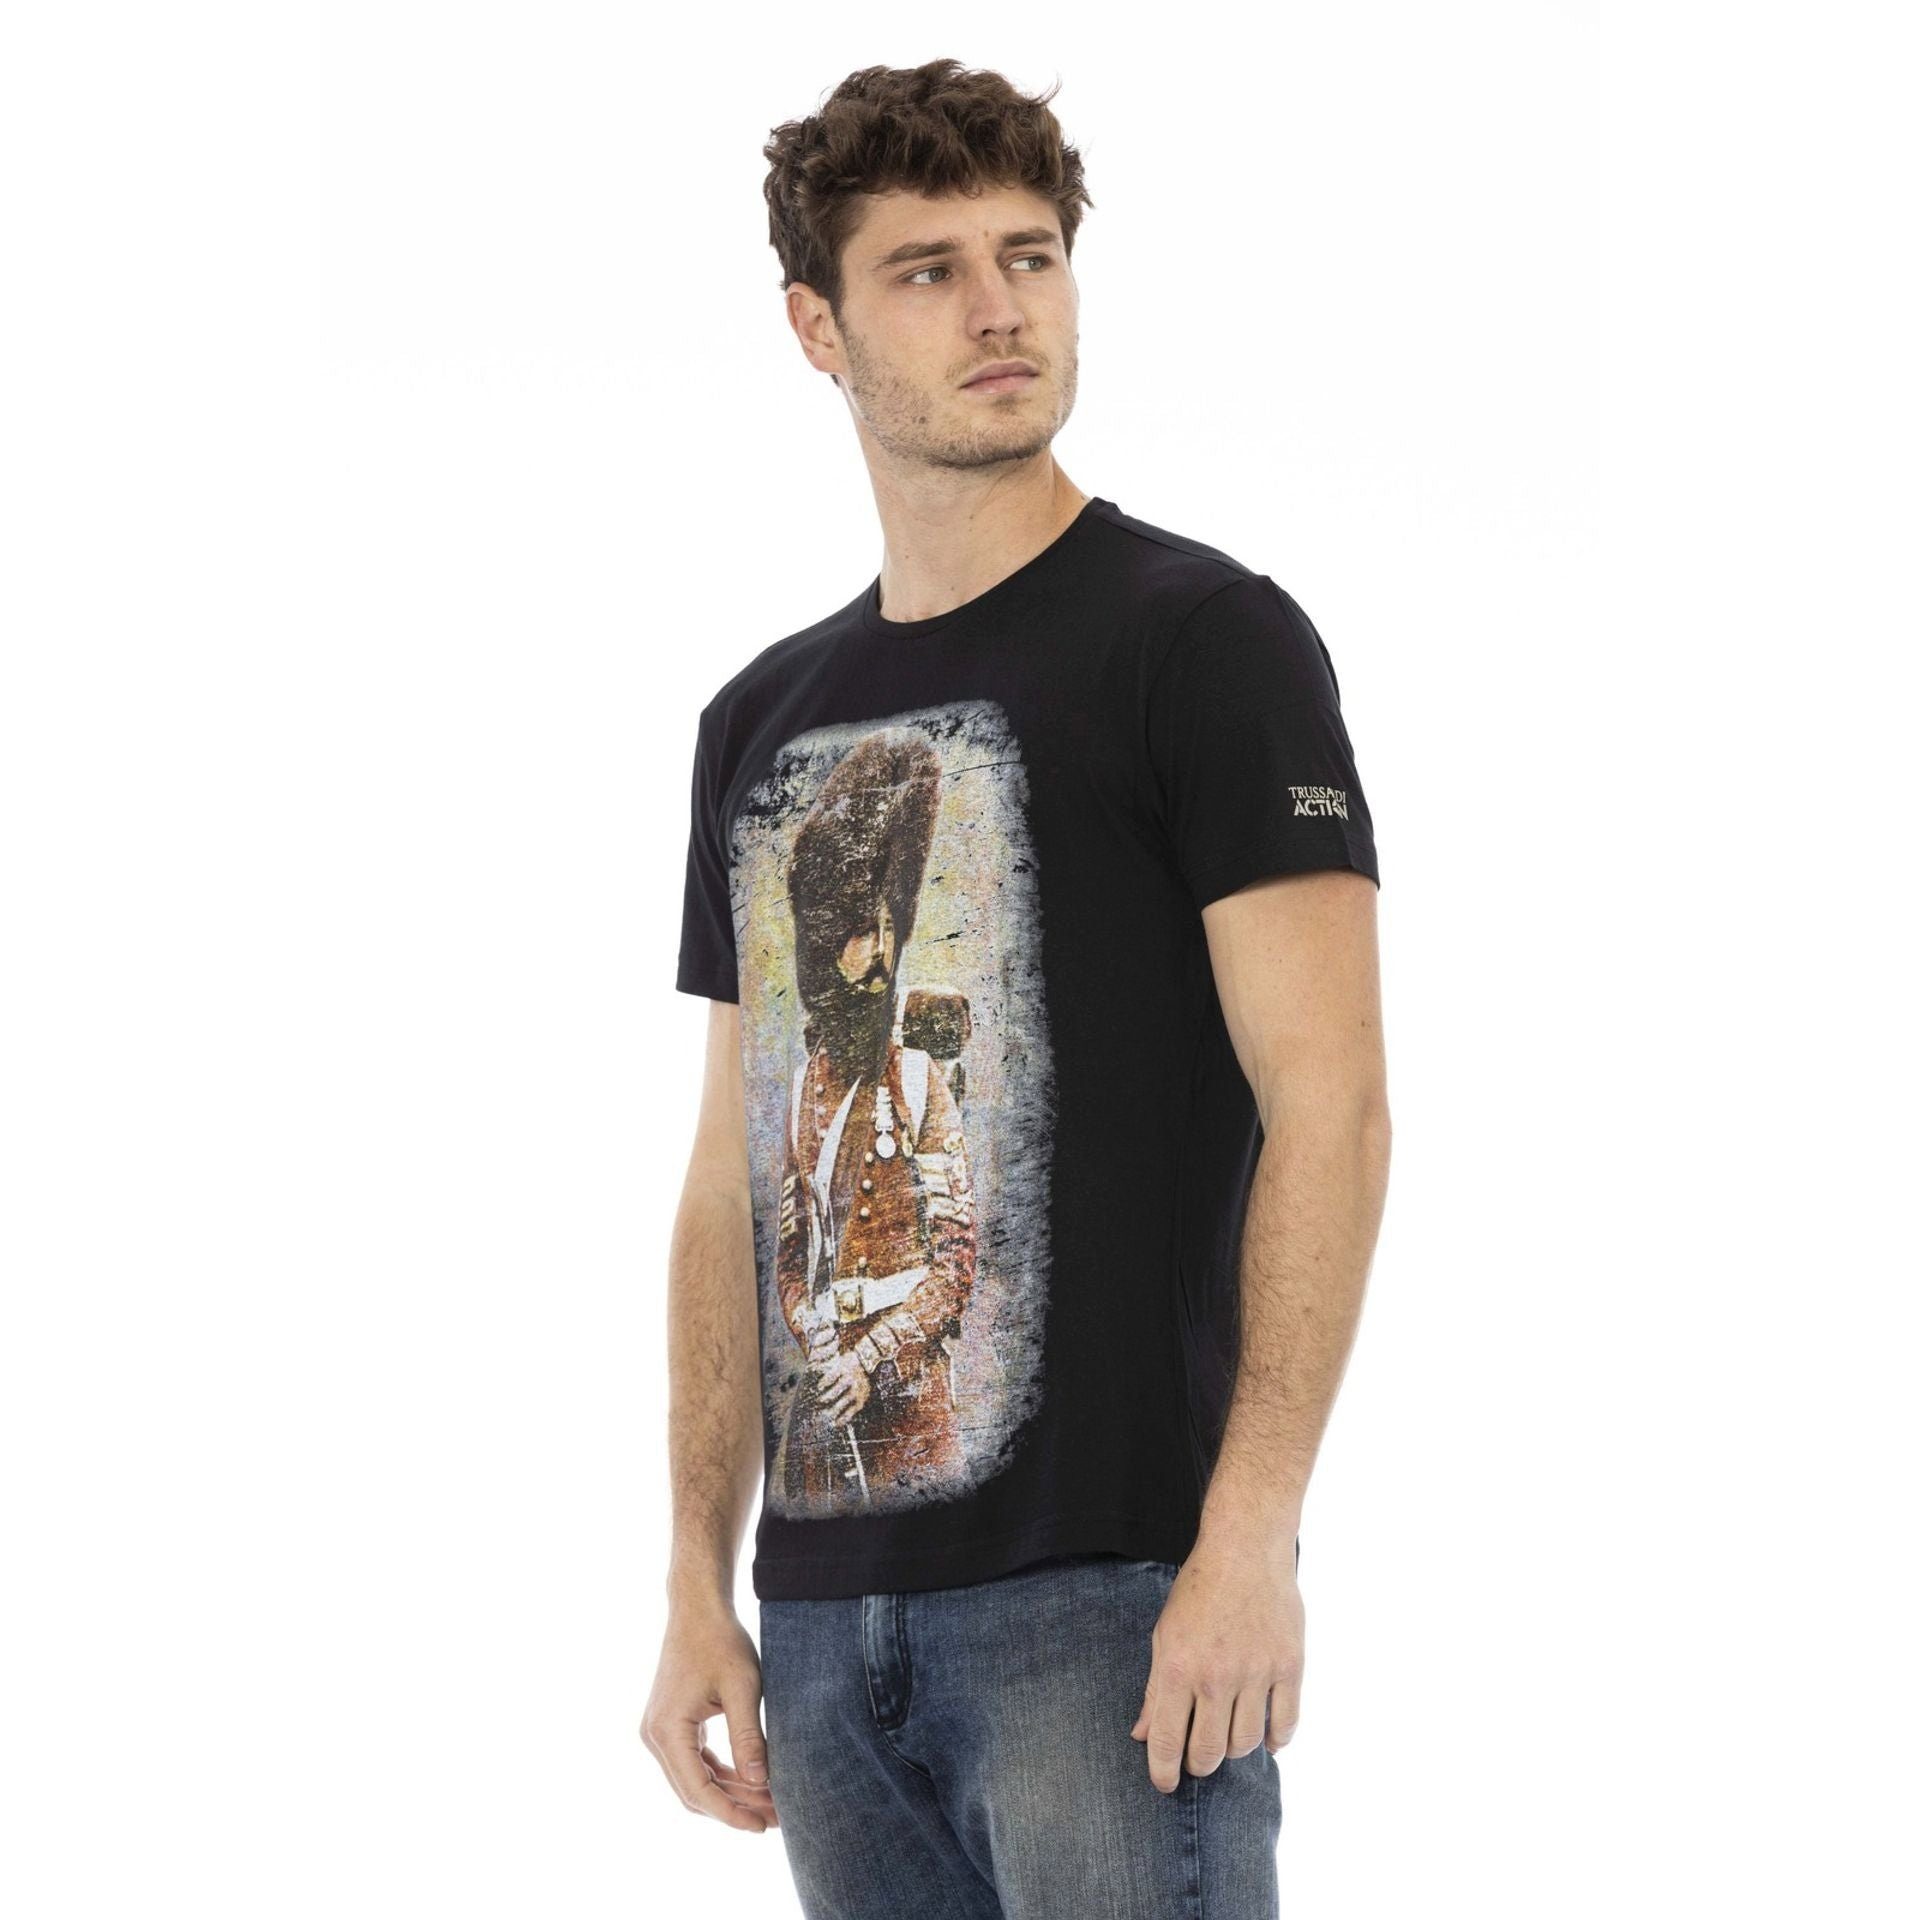 Trussardi T-Shirt Note Schwarz sich eine verleiht durch aber das aus, subtile, Es Action Trussardi Logo-Muster zeichnet stilvolle T-Shirts, das